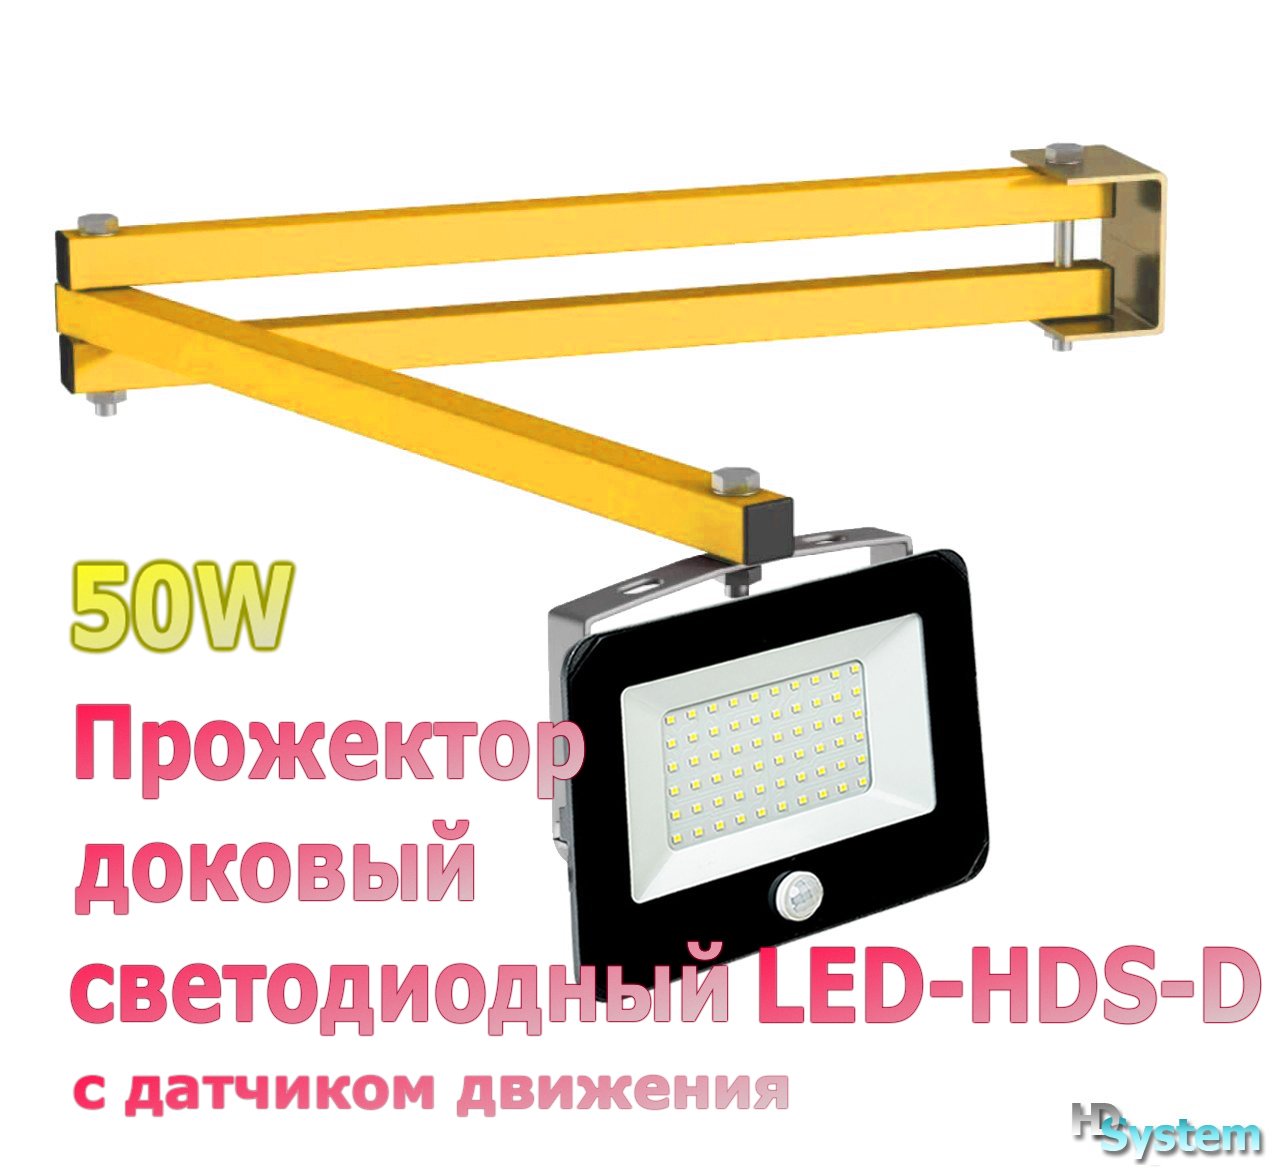 Светодиодный прожектор LFL 20w 05 s схема. Светодиодный вращающийся прожектор применение. Пиновка HDS led. Прожектор светодиодный SAFFIT sfl90-30 30w на кронштейне фото. Эксплуатация прожекторов